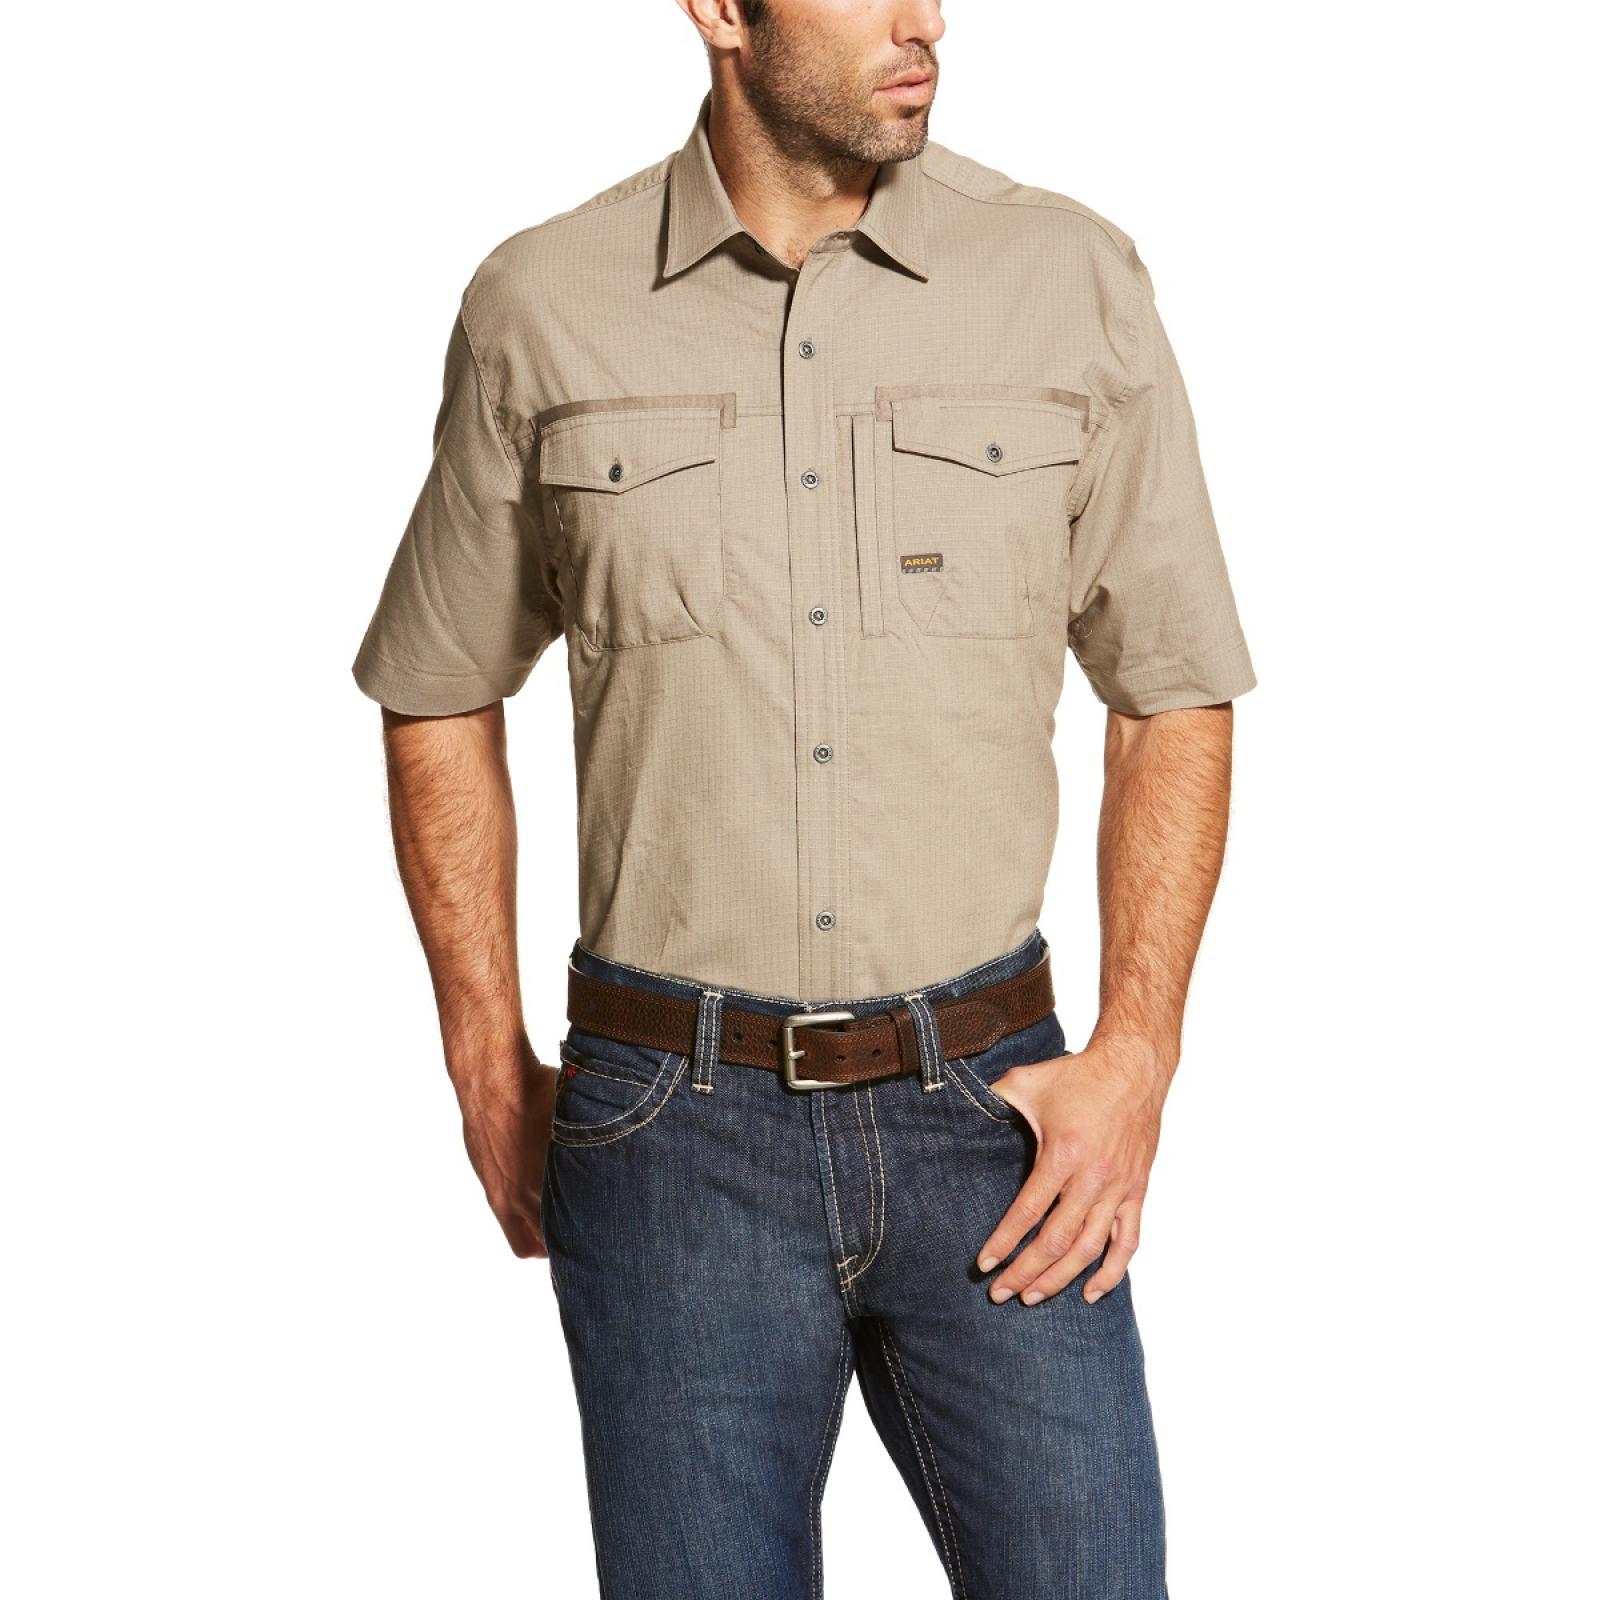 Ariat Rebar Workman Short Sleeve Work Shirt